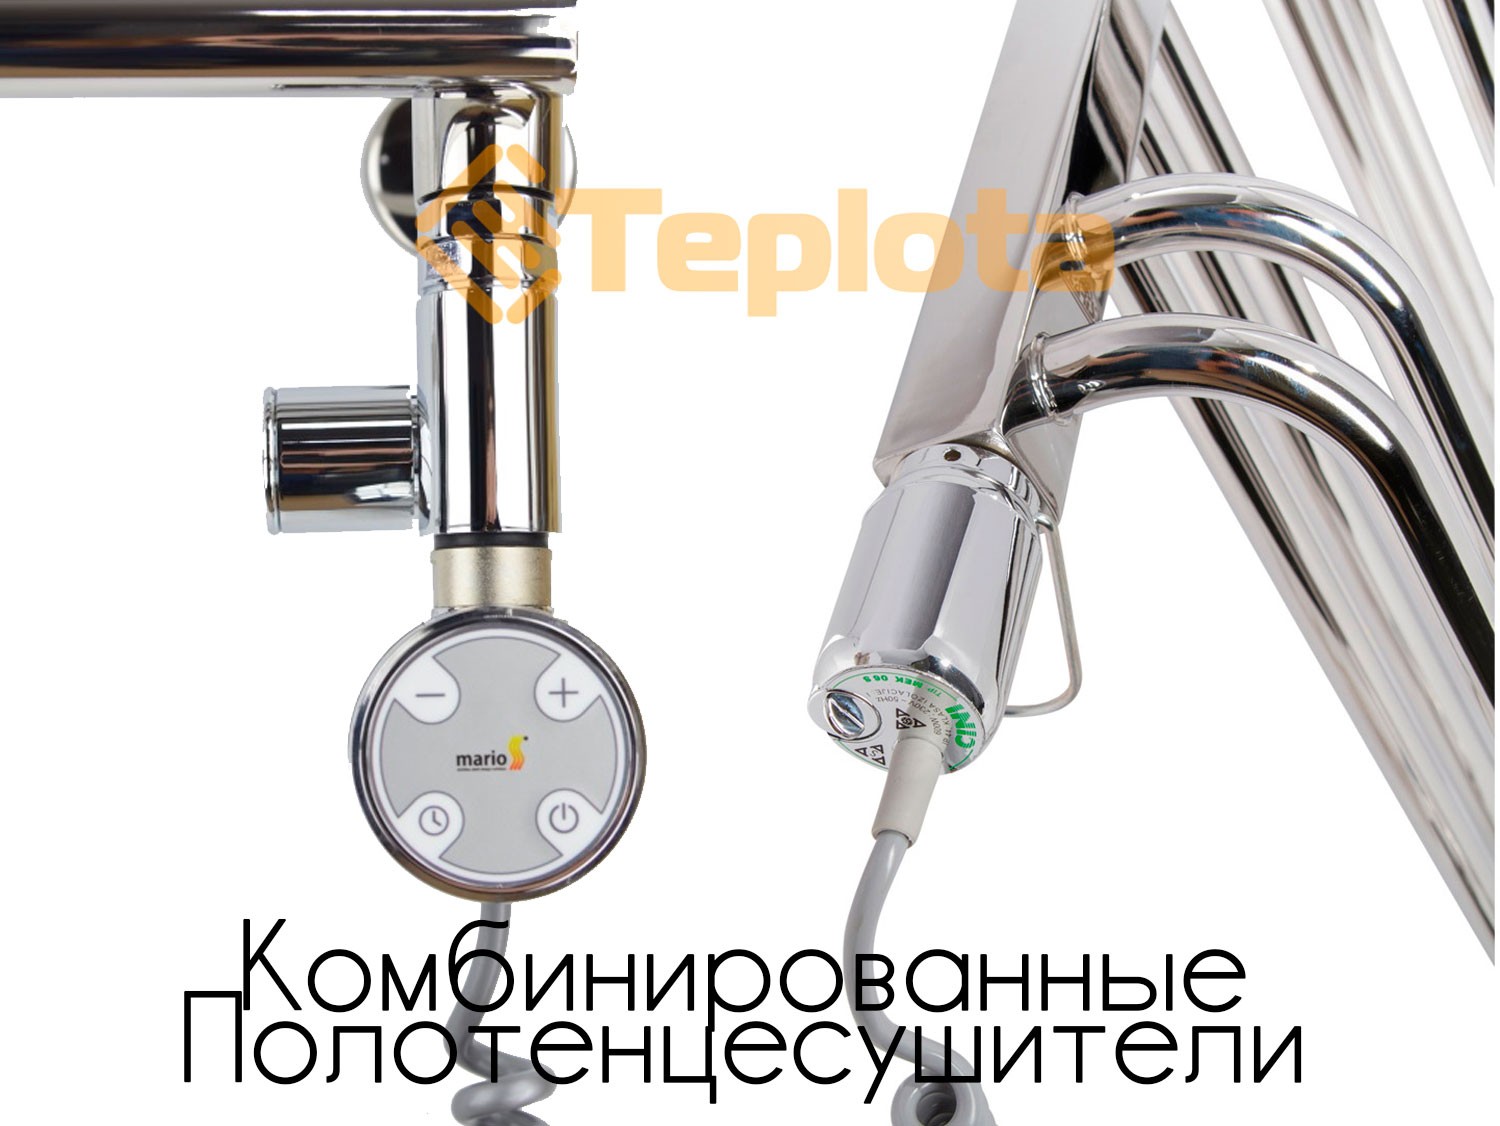  КРИСТАЛЛ 500x900 бежевый (140 W), (NAVIN), Украина - Электрический полотенцесушитель (стеклянная панель) 